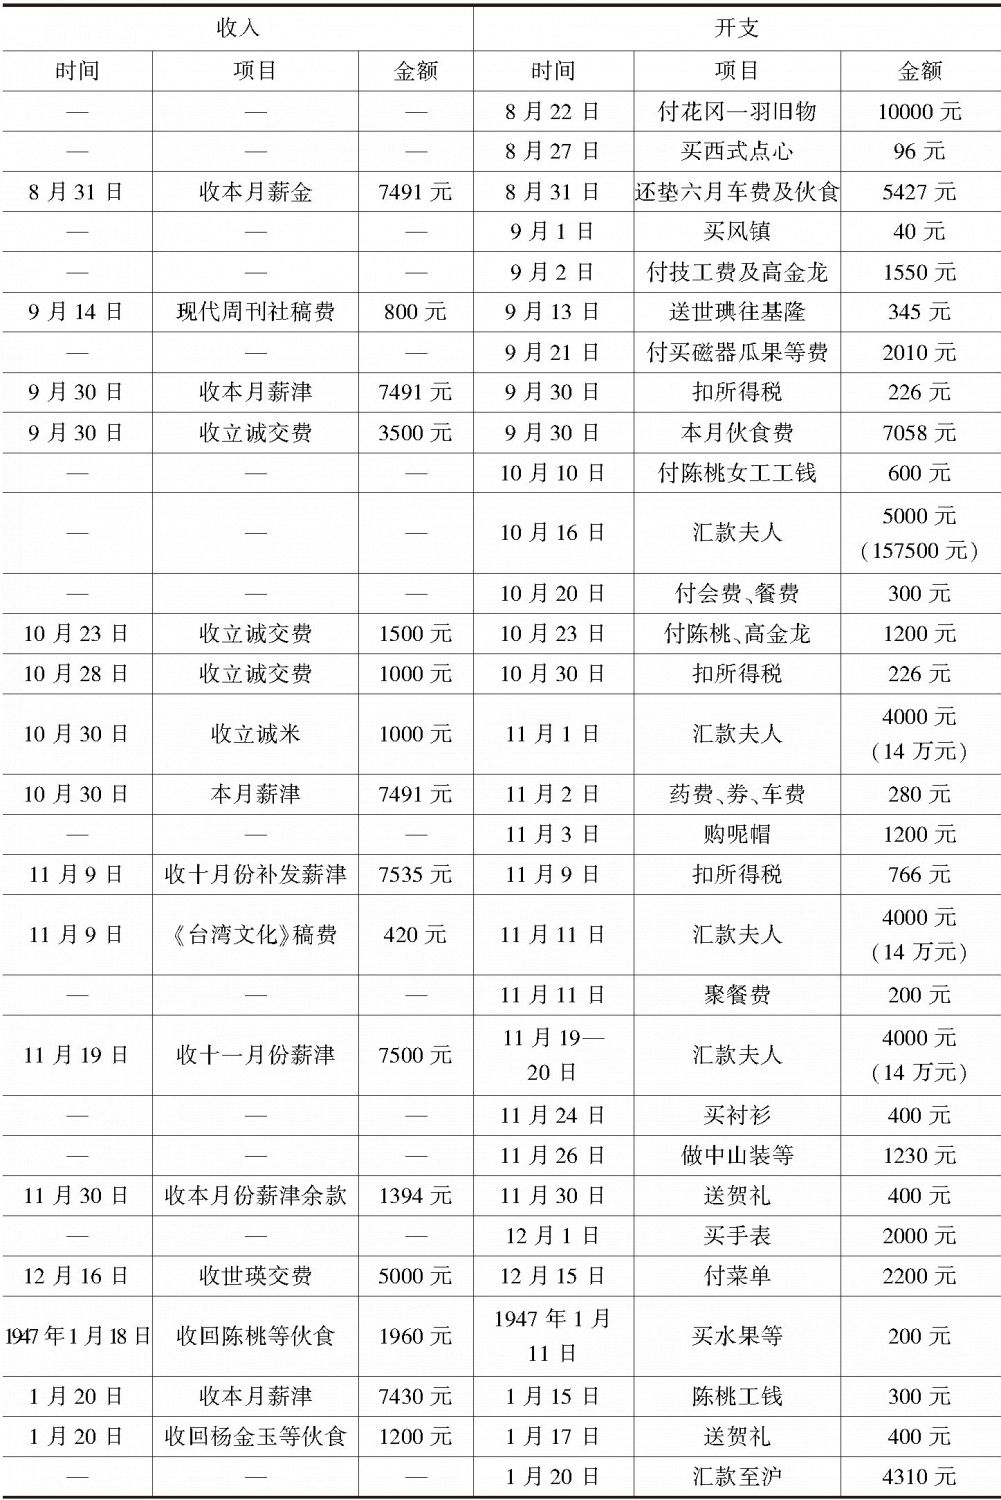 附录 1946年7月至1947年6月许寿裳生活账单明细表-续表1